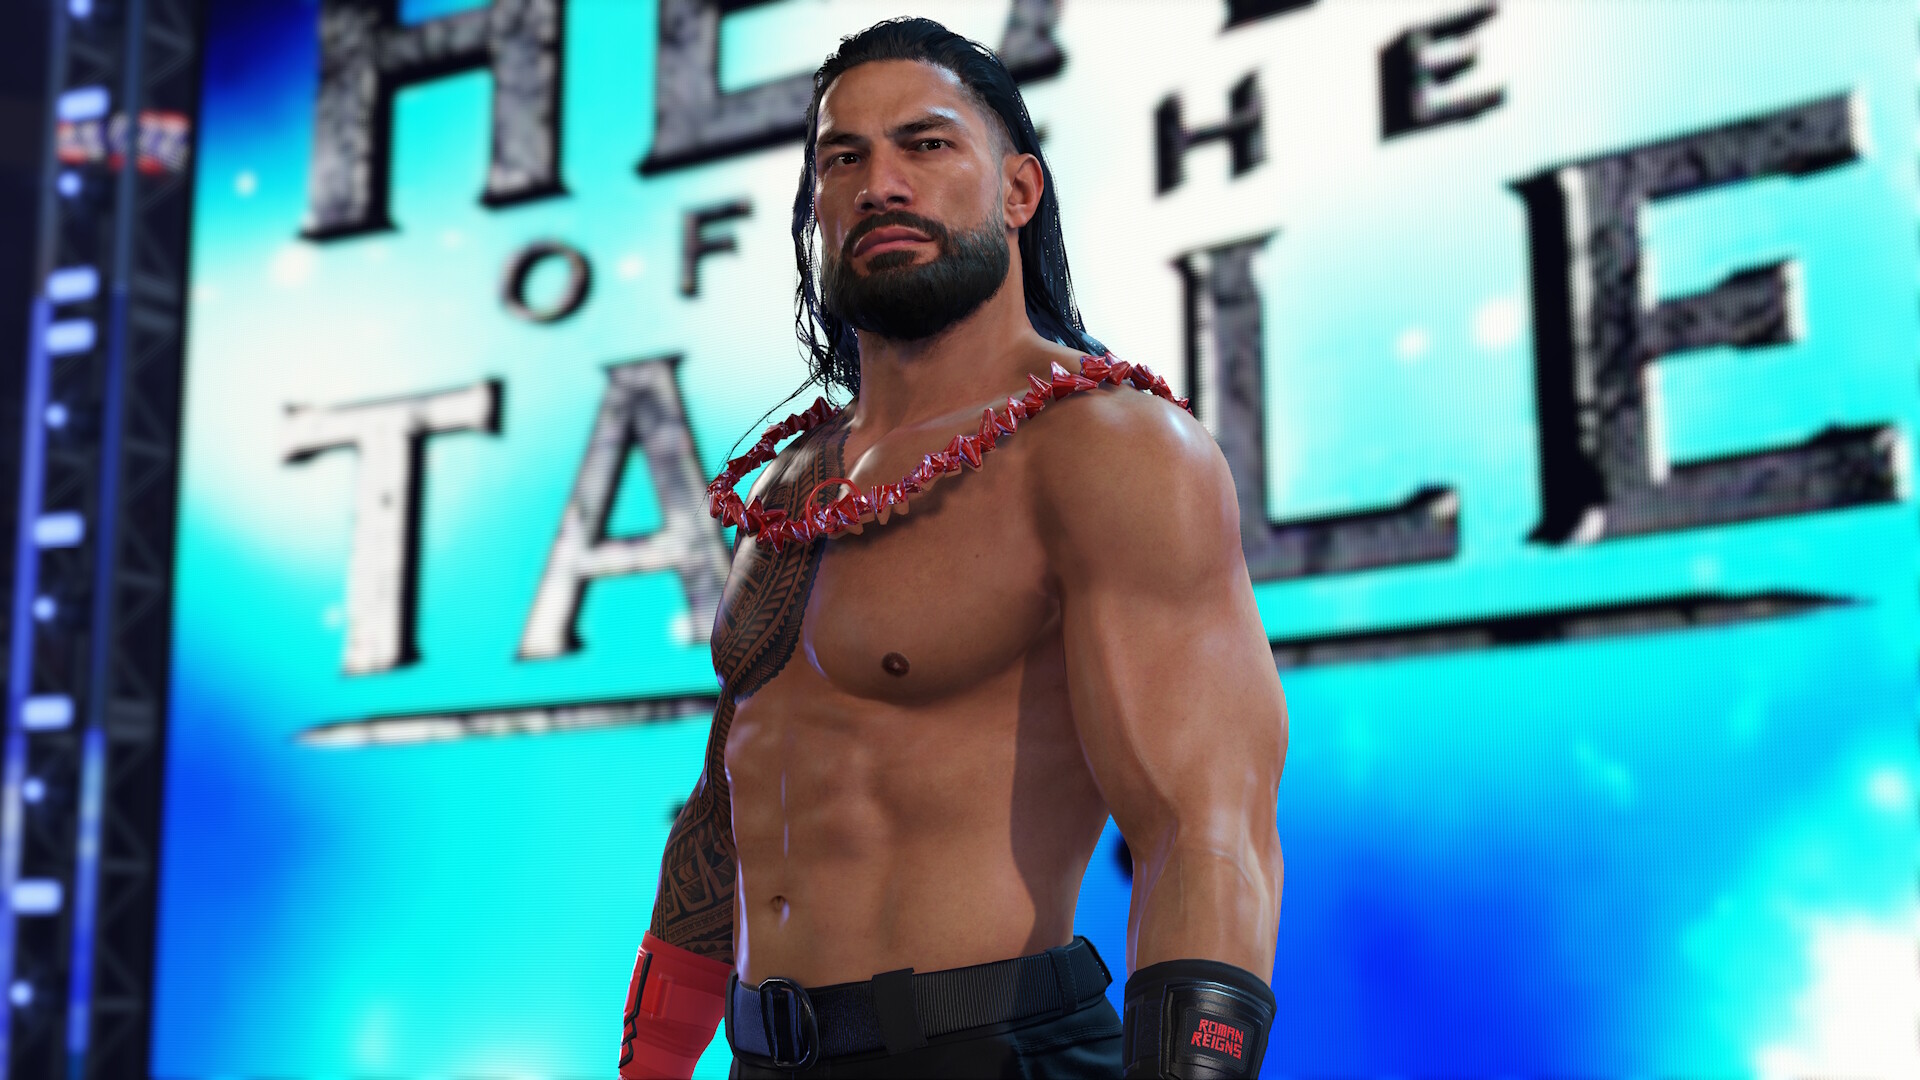 Les développeurs de WWE 2K24 ont publié une nouvelle bande-annonce pour le jeu, qui présente deux scénarios : Unleashed et Undisputed